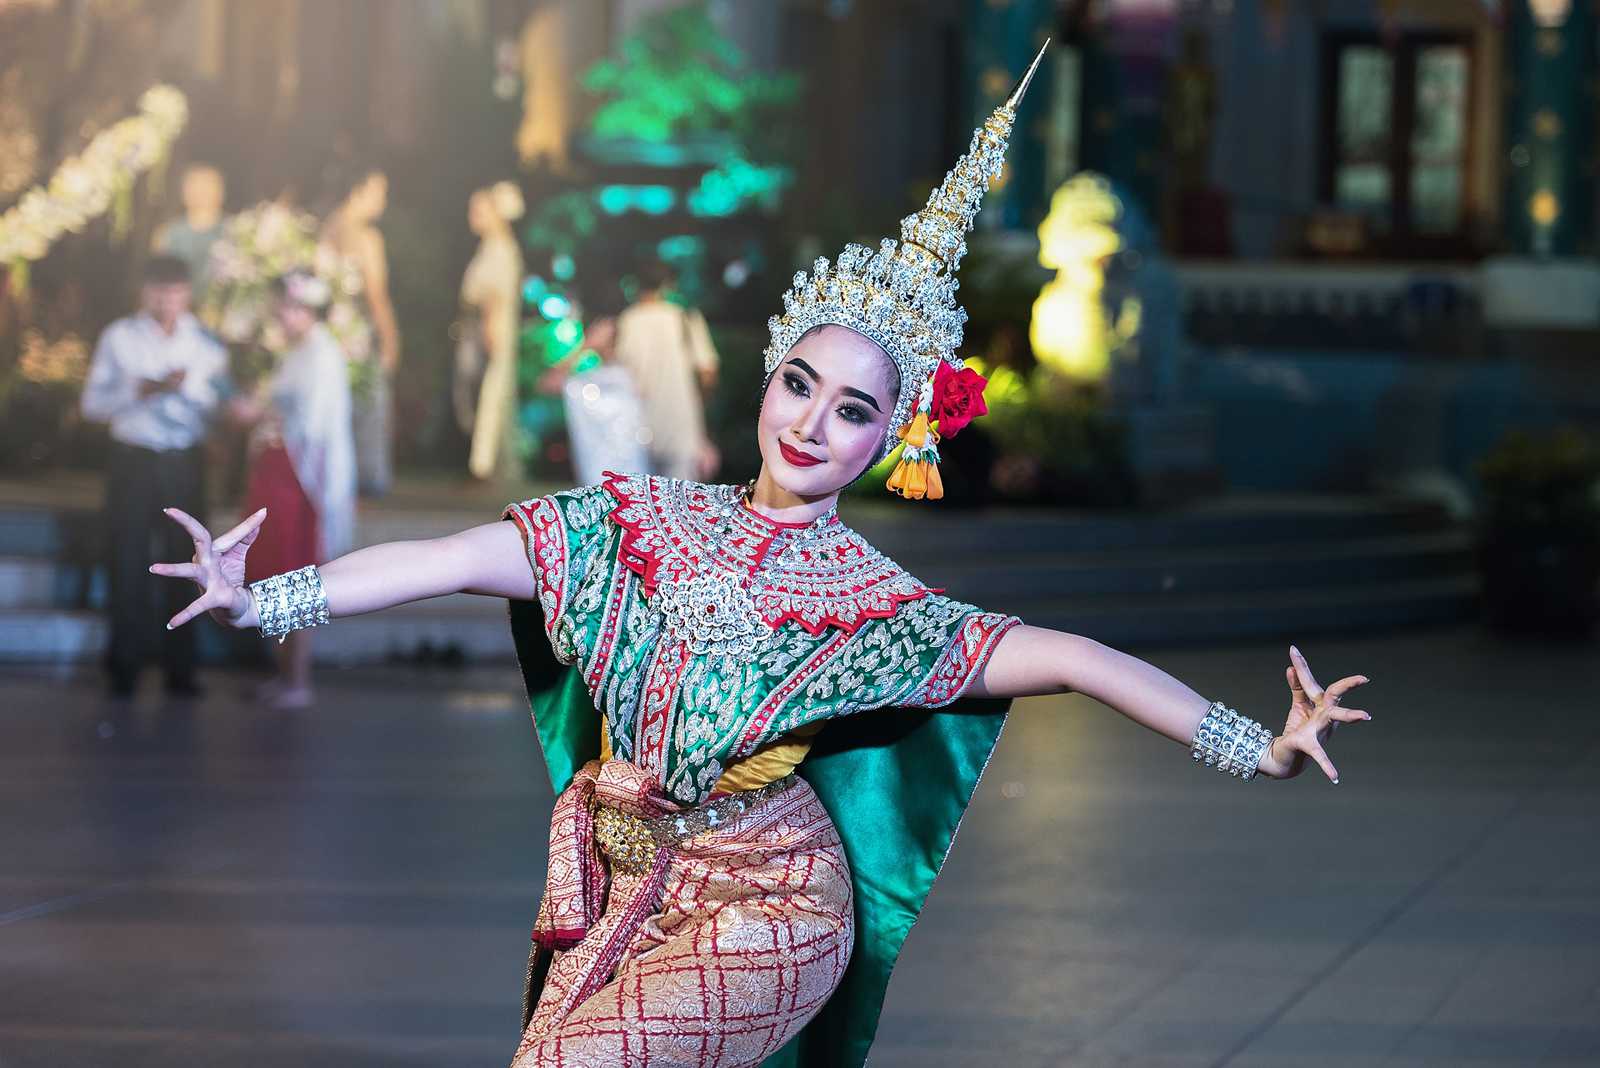 pb-thailand-dancer-1-1600x1068